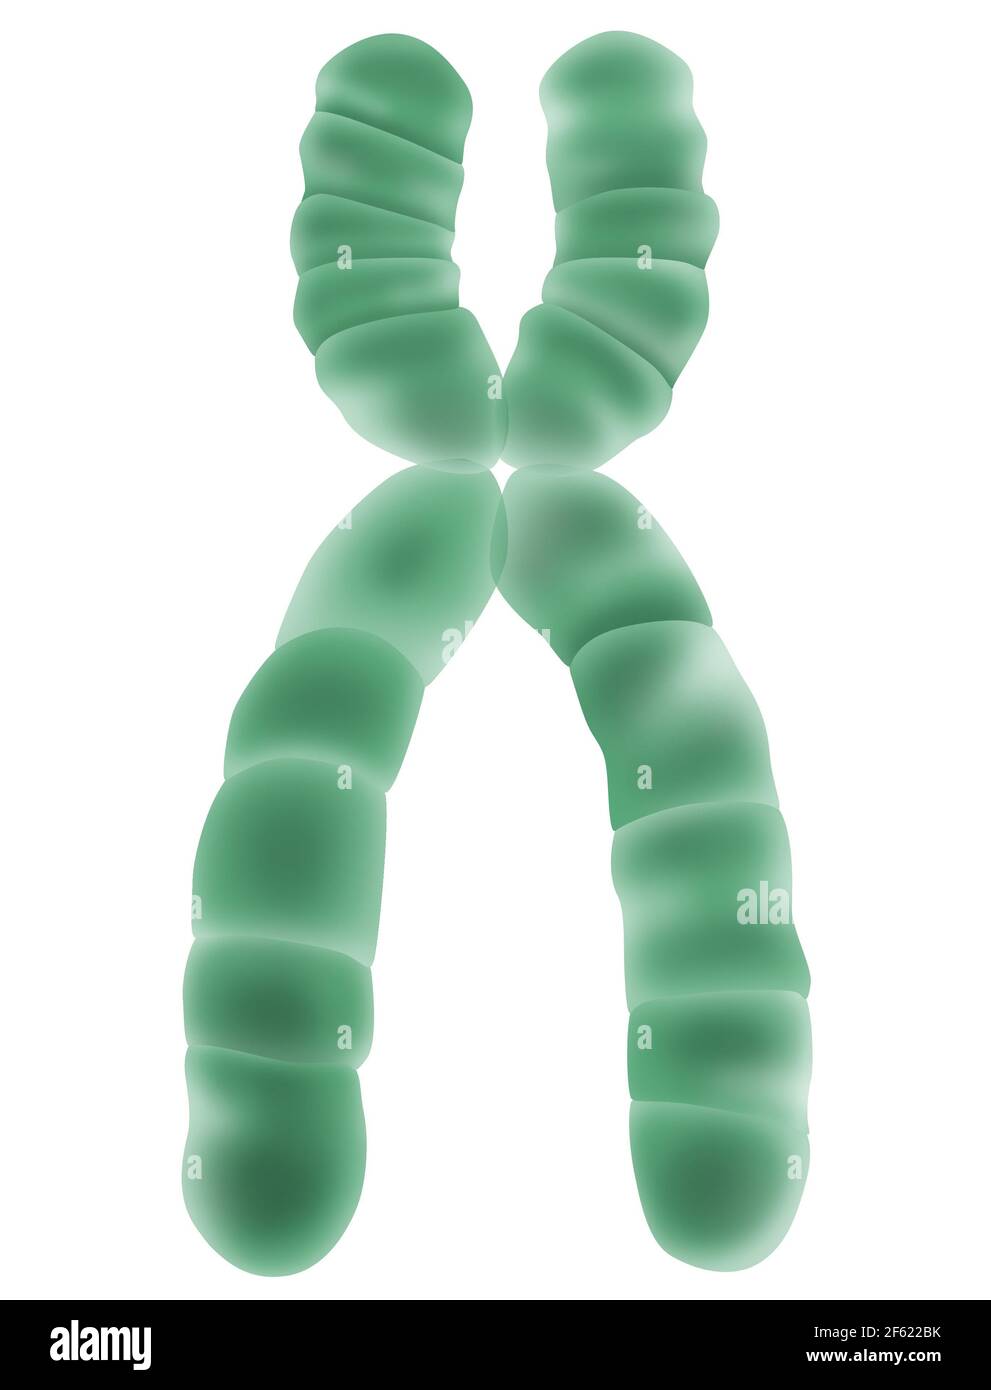 Chromosome X, illustration Banque D'Images